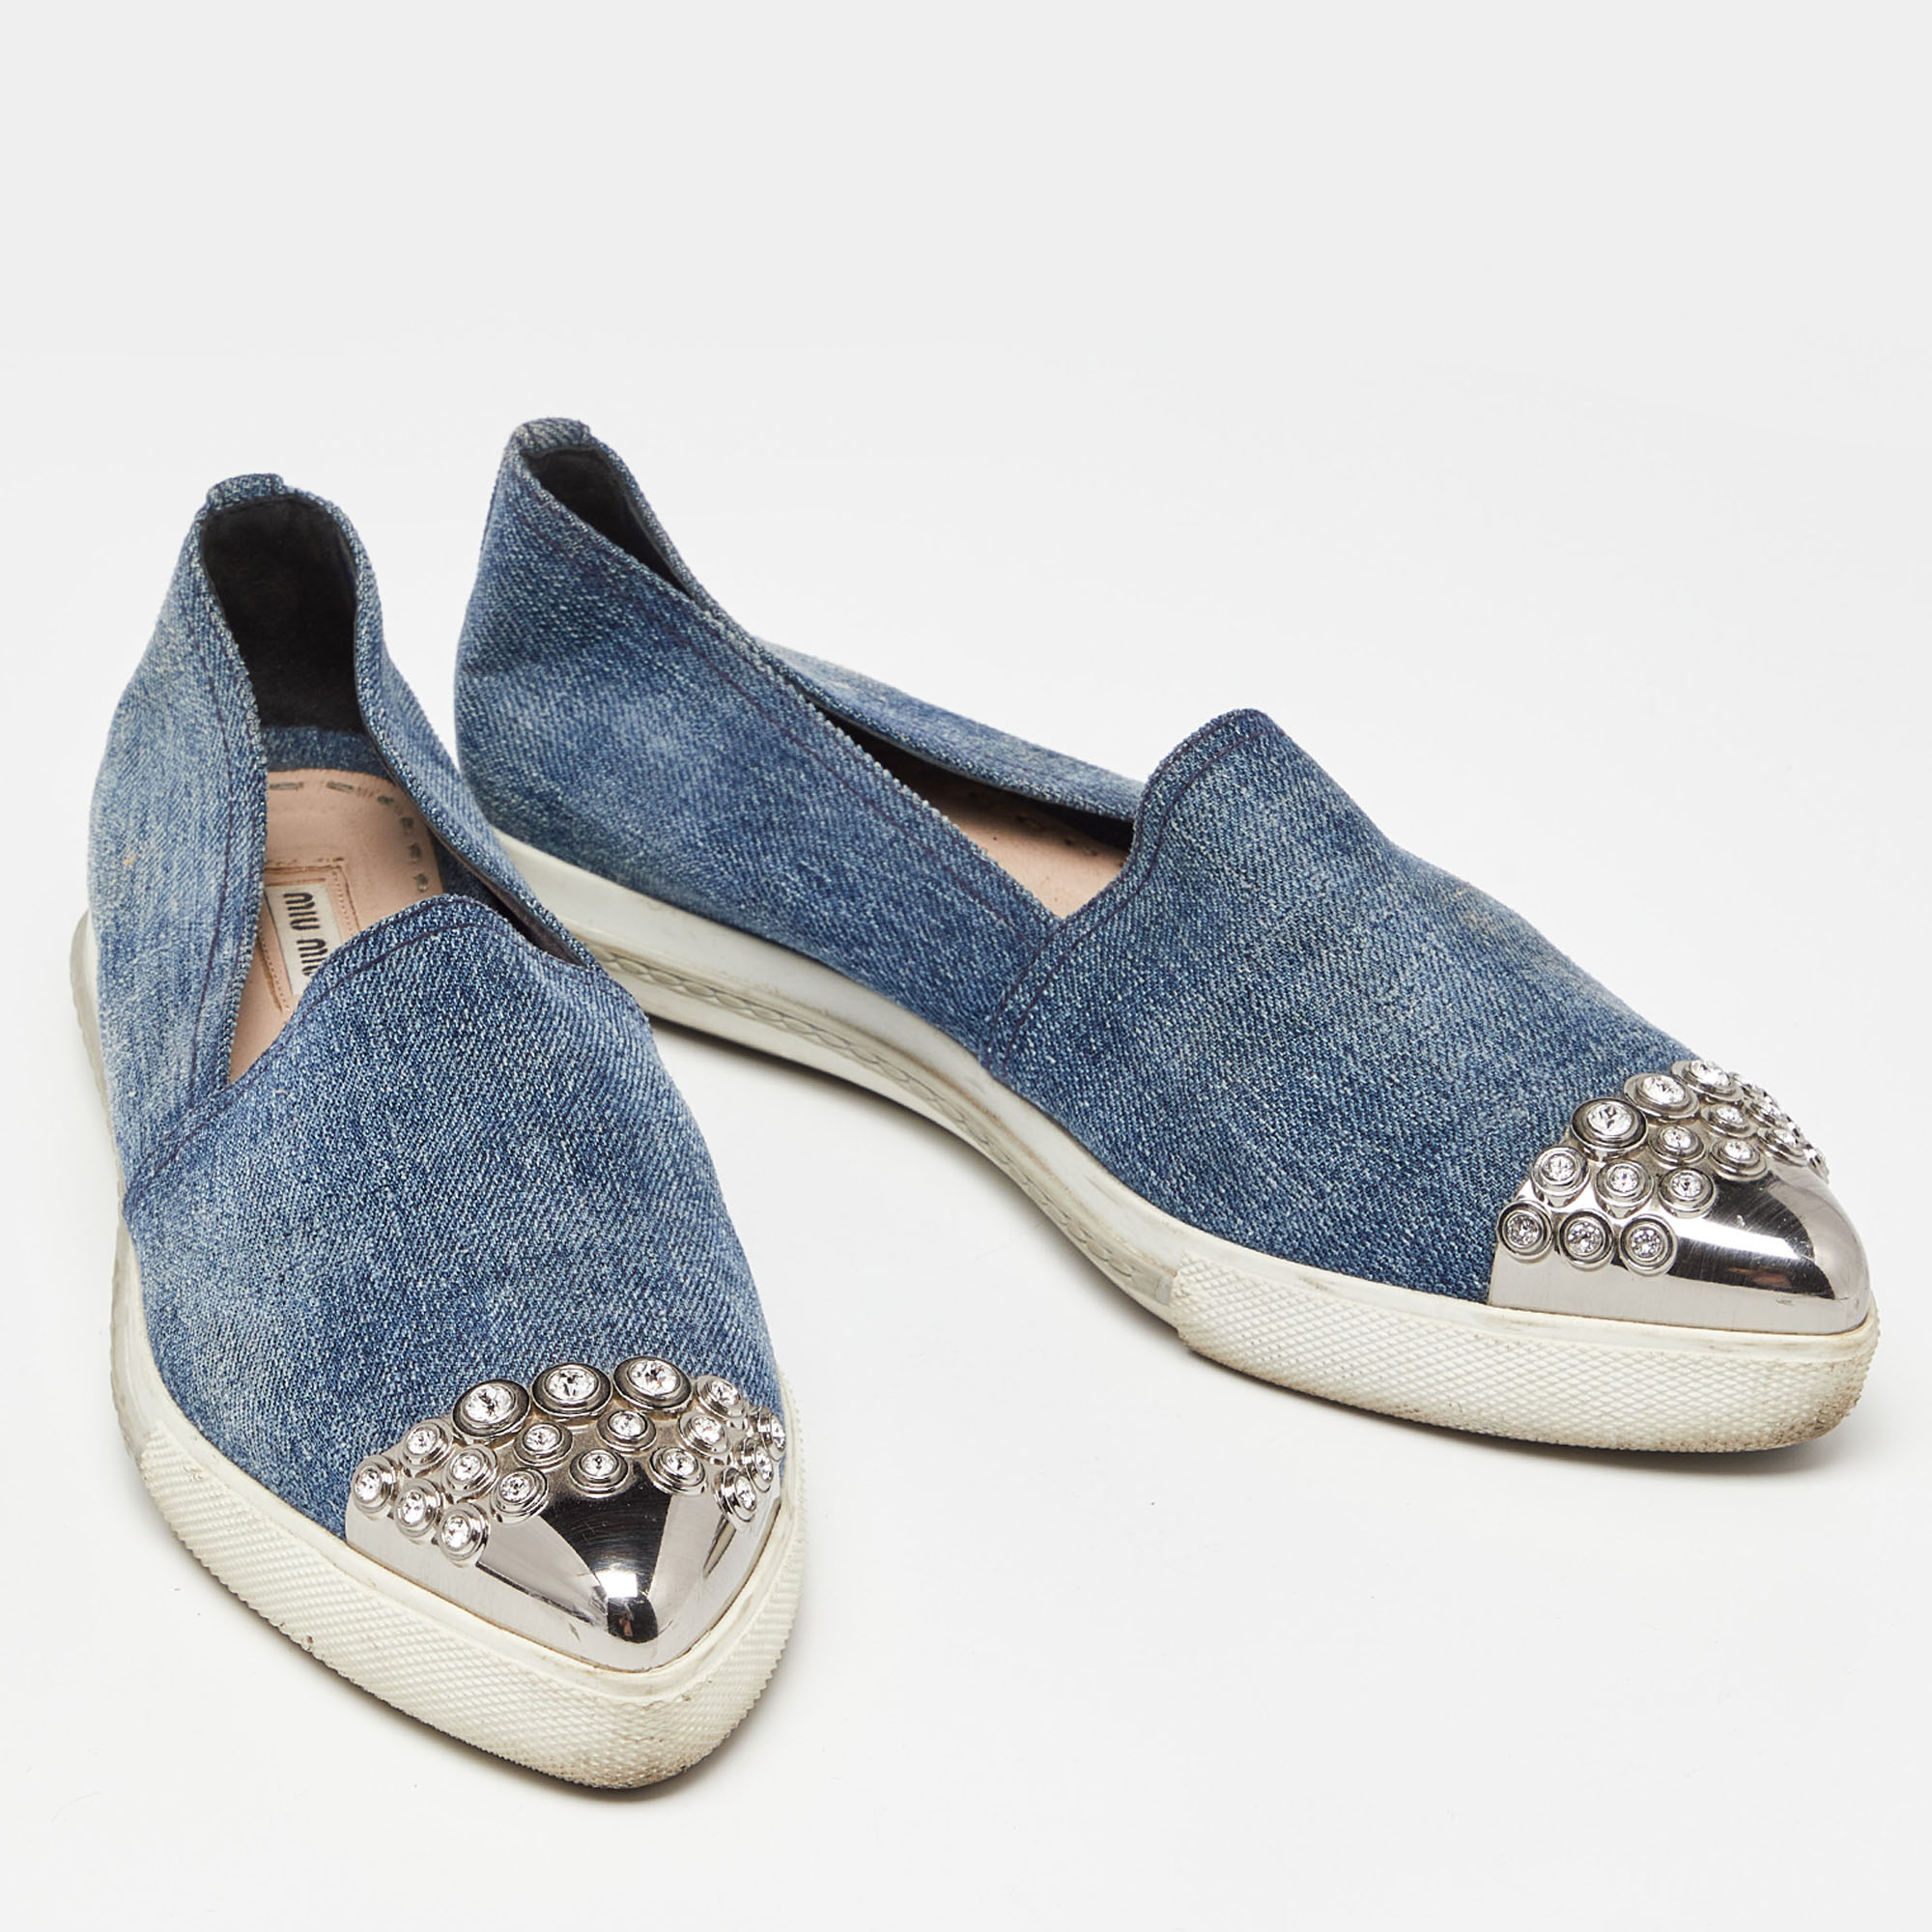 Miu Miu Blue Denim Crystals Embellished Slip On Loafers Size 38.5